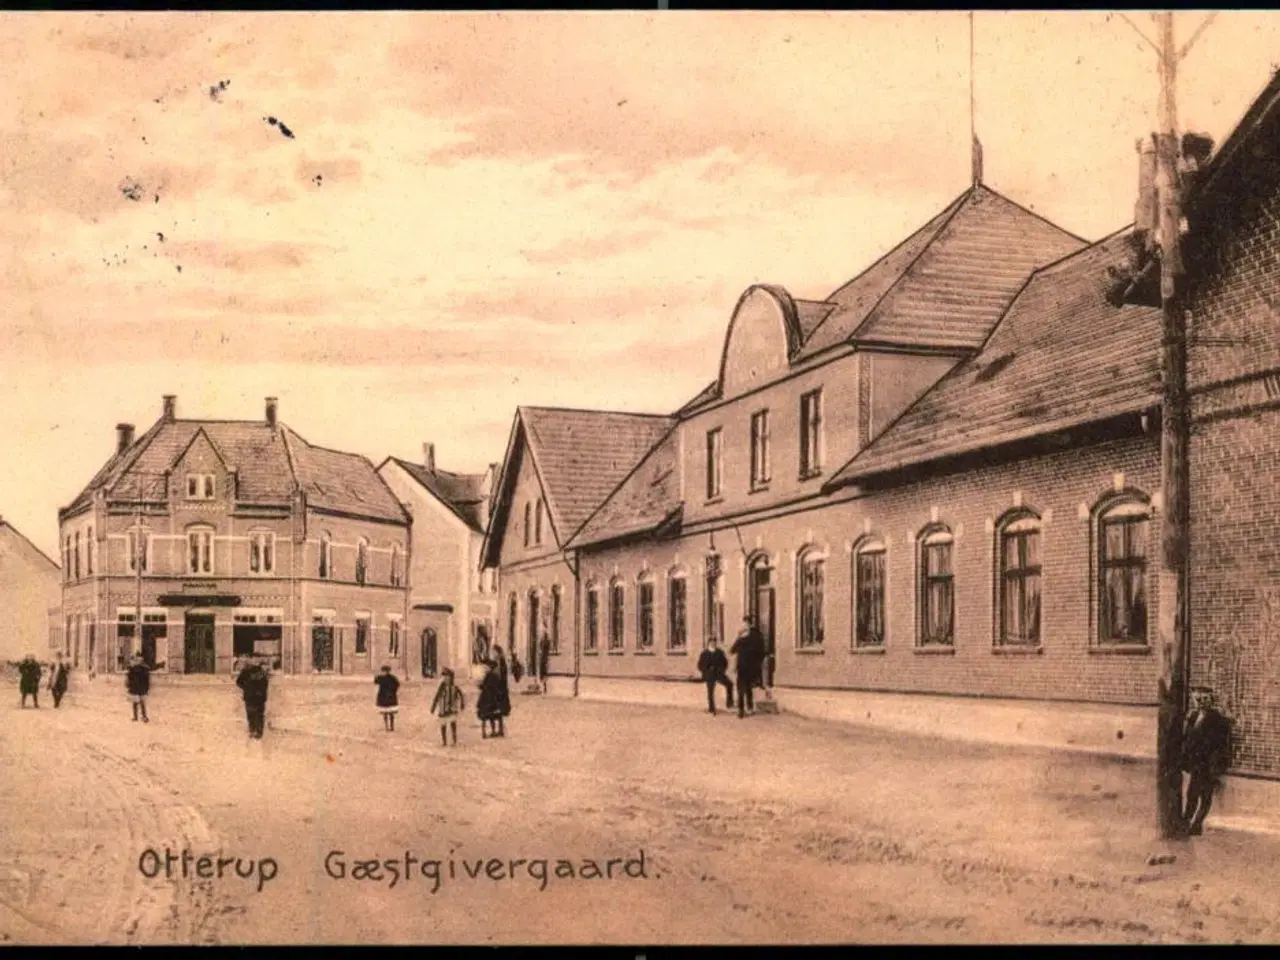 Billede 1 - Otterup - Gæstgivergaard - E.C. Eneret 21728 - Brugt